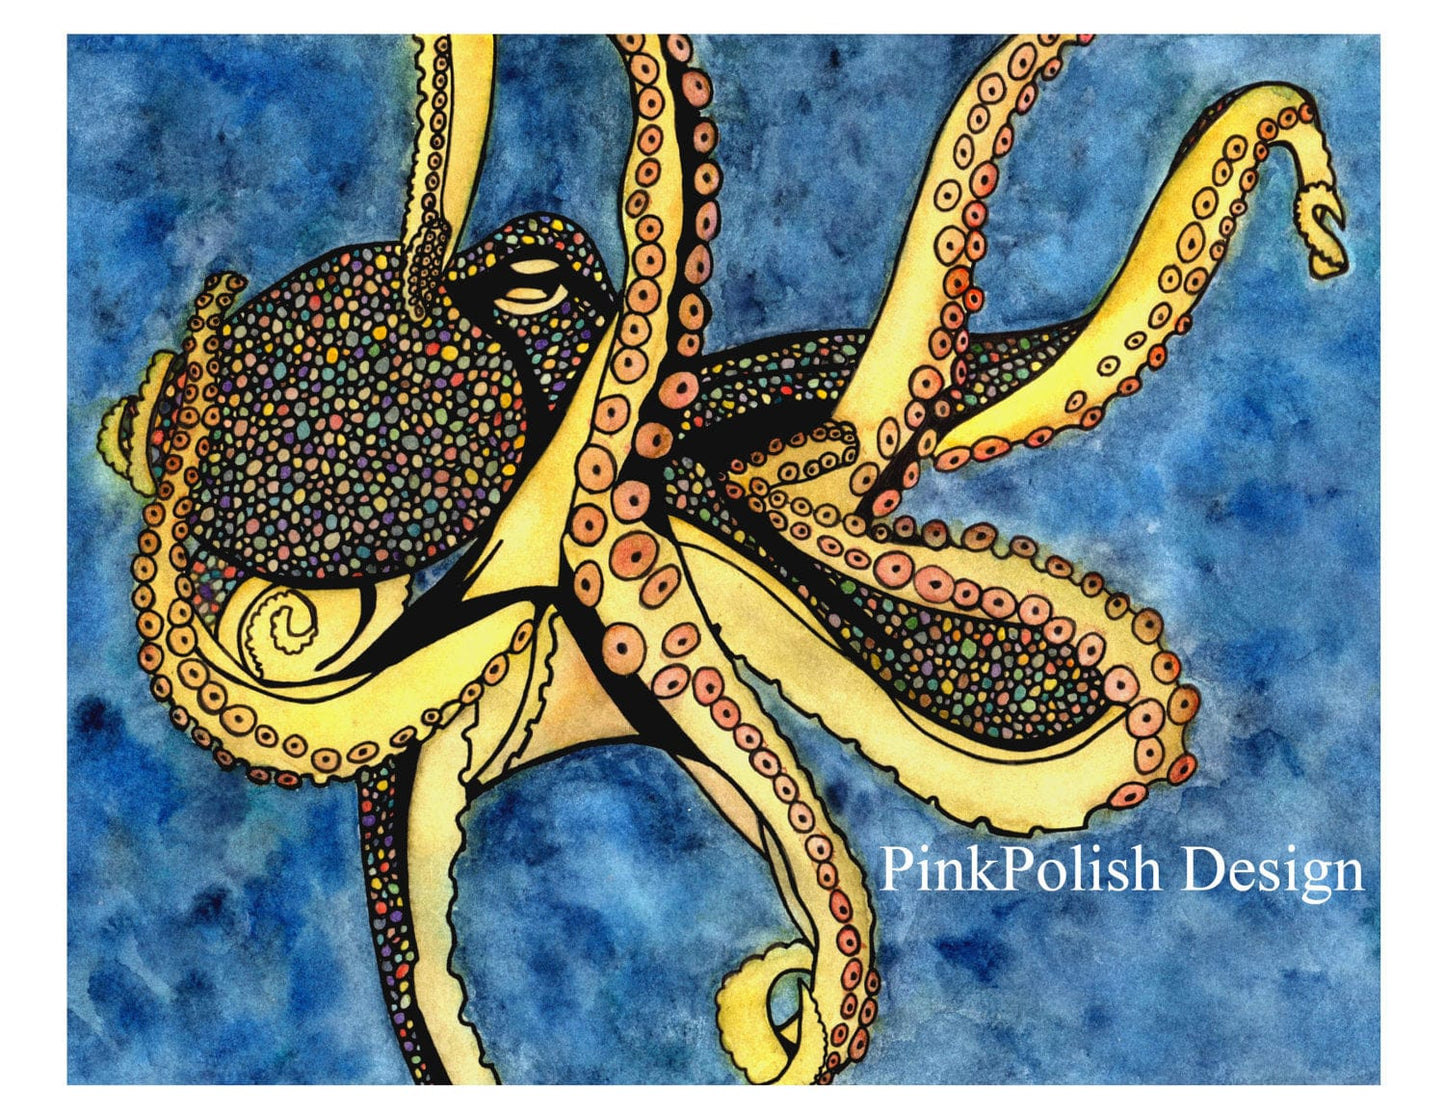 PinkPolish Design Art Prints "Octopus Genius"  Watercolor Painting: Art Print